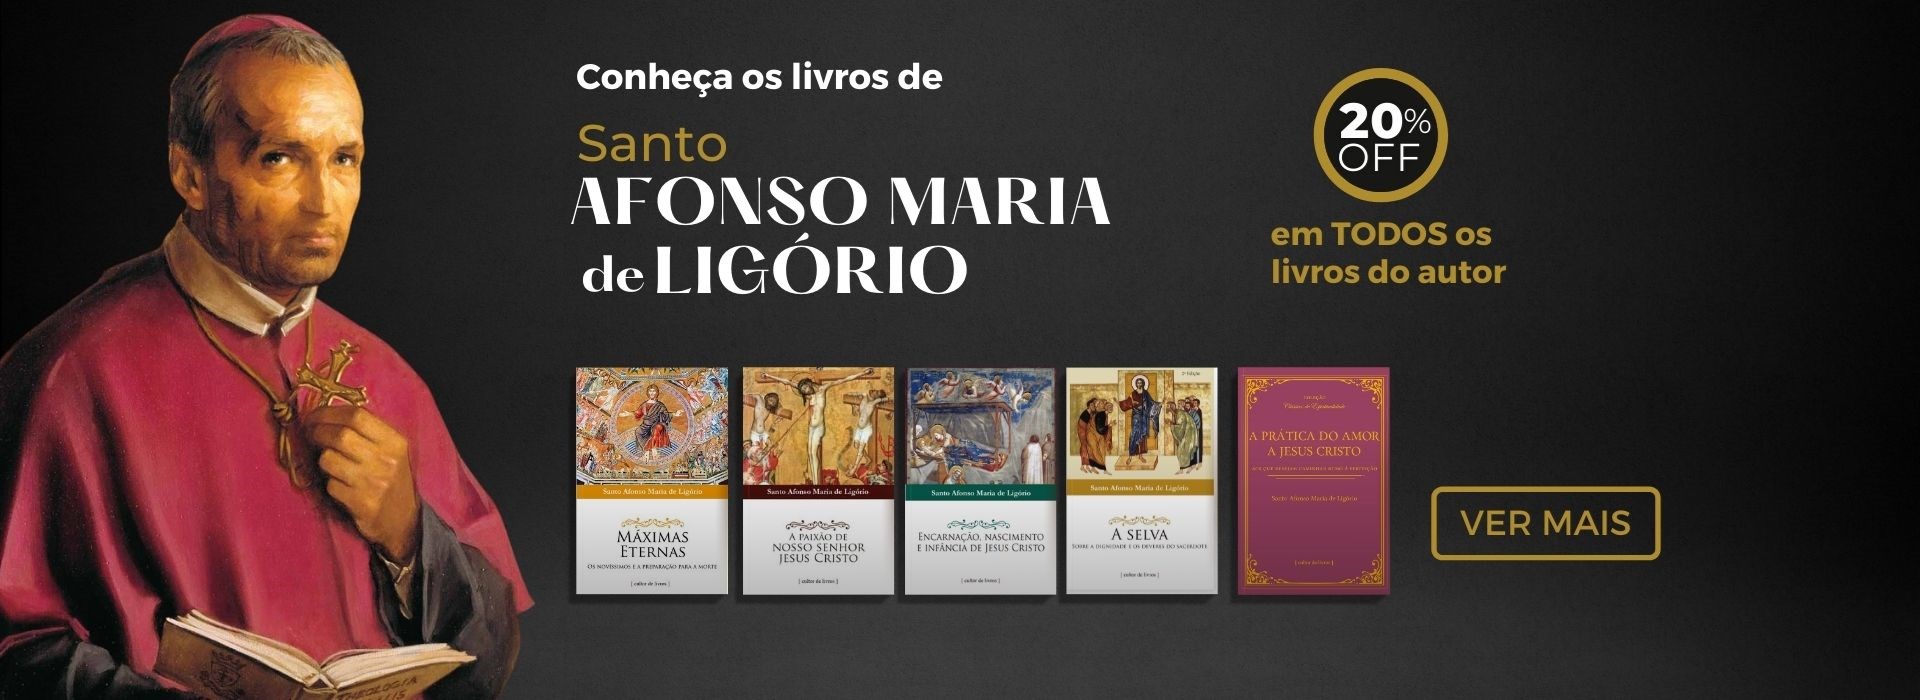 Santo Afonso Maria de Ligorio livros com 20% desconto